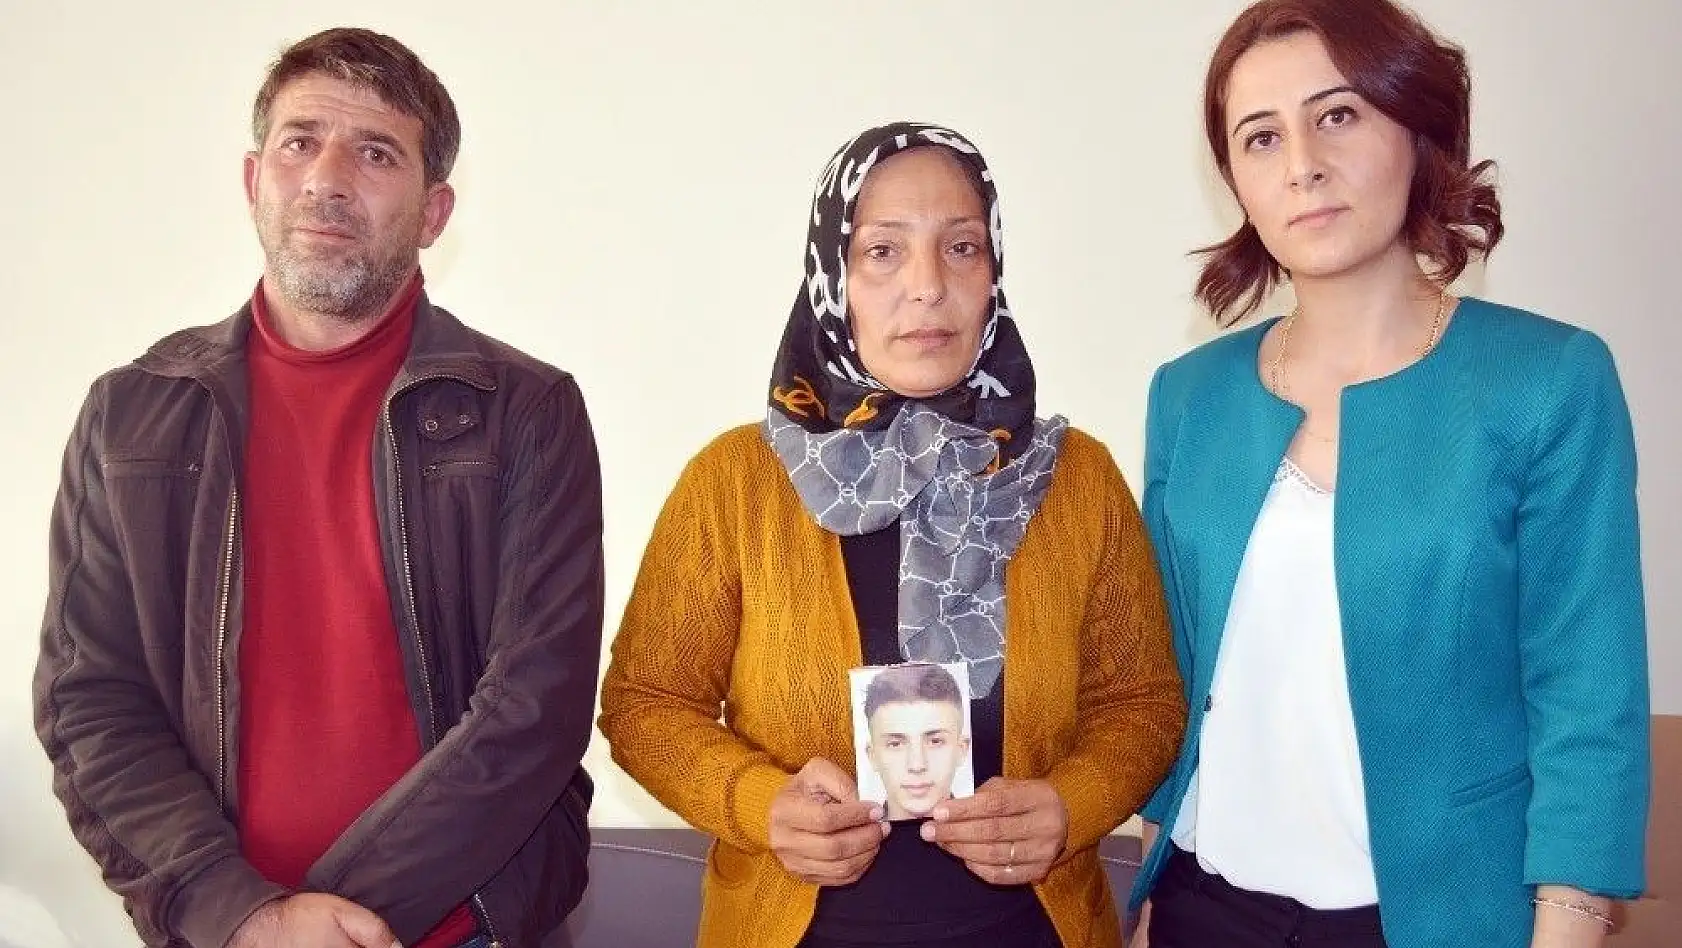 12 bıçak darbesiyle öldürülen Berat'ın ailesini yıkan karar
